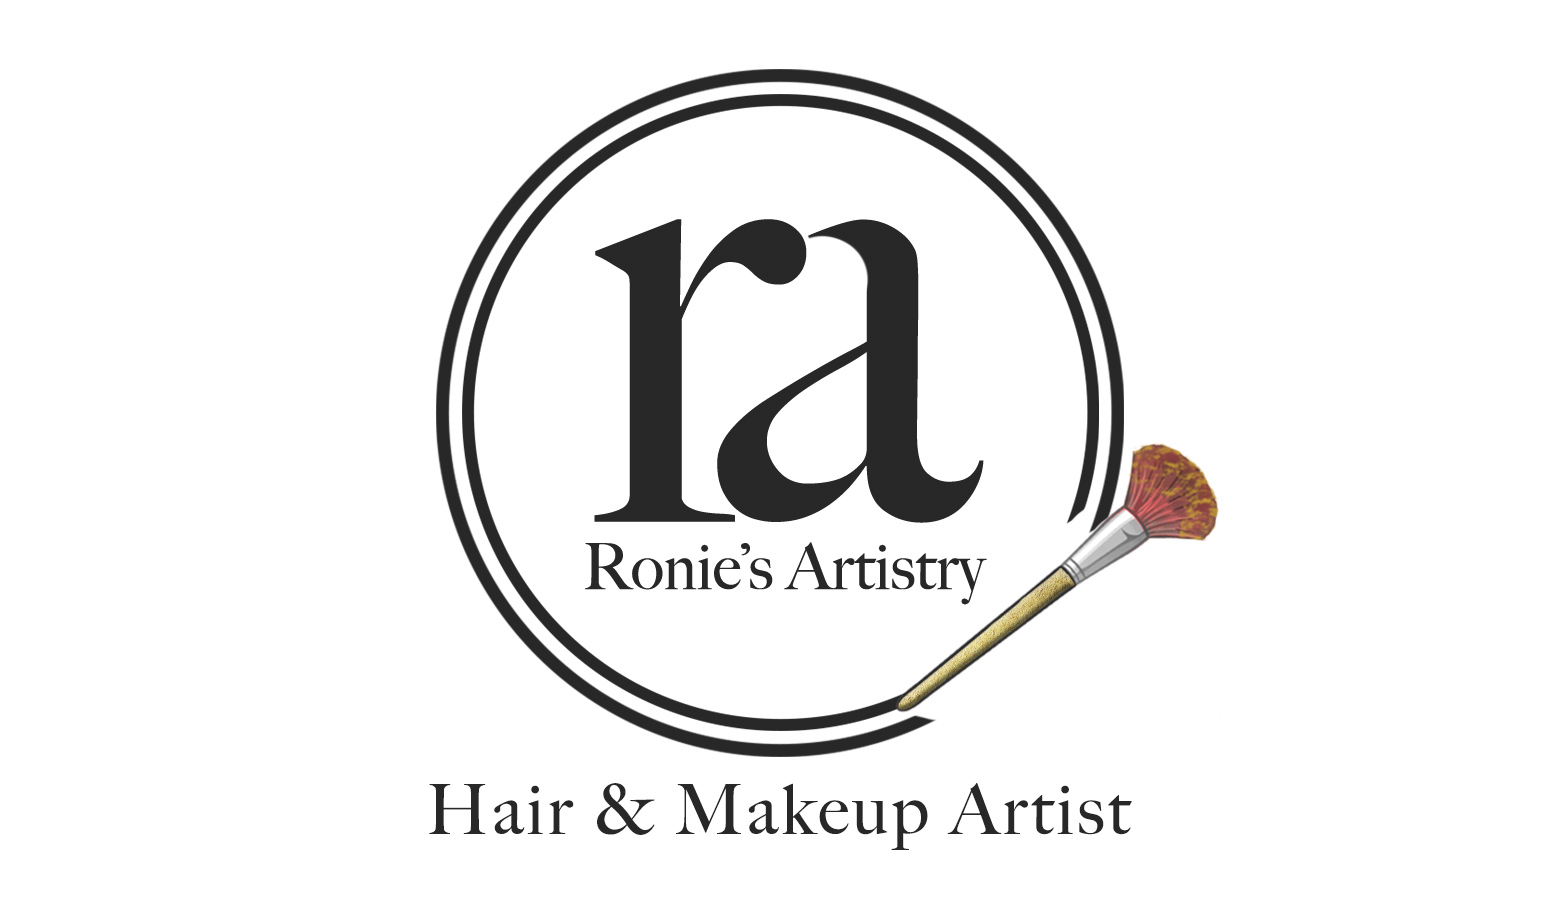 Ronies artistry logo